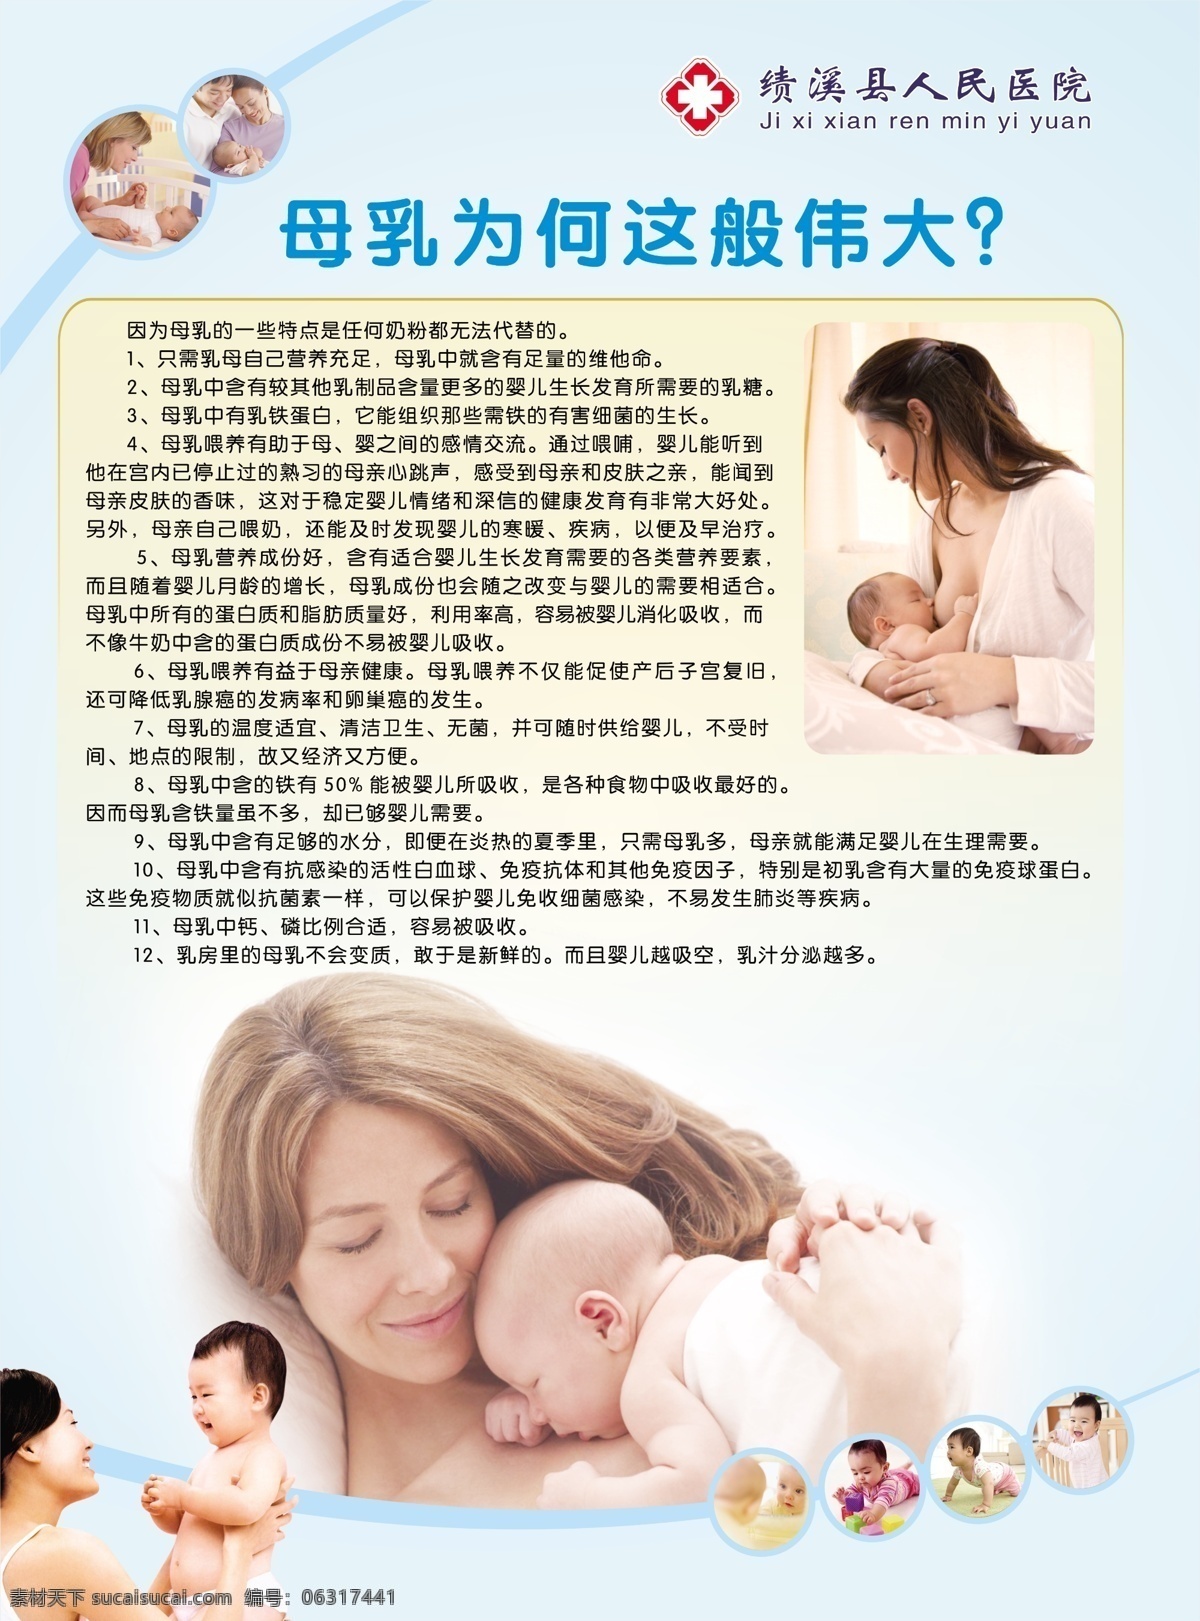 母乳 为何 这般 伟大 母乳喂养 母子 婴儿 母乳含义 原创设计 原创海报